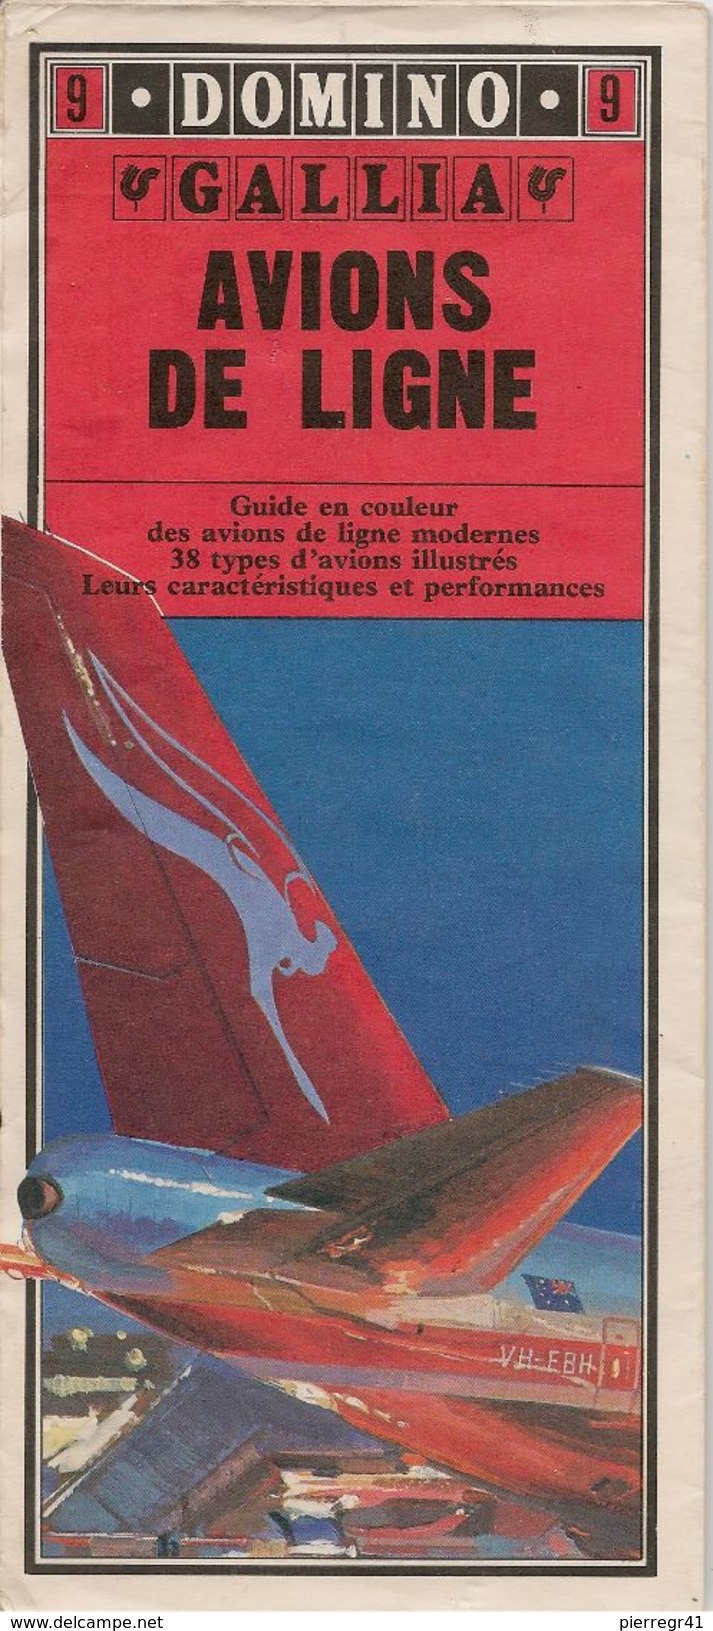 GUIDE-DOMINO-N°9-GALLIA-1979-AVIONS De LIGNE-38 Types D AVIONS De LIGNES MODERNES-Ft CARTE ROUTIERE-TBE- - Manuales